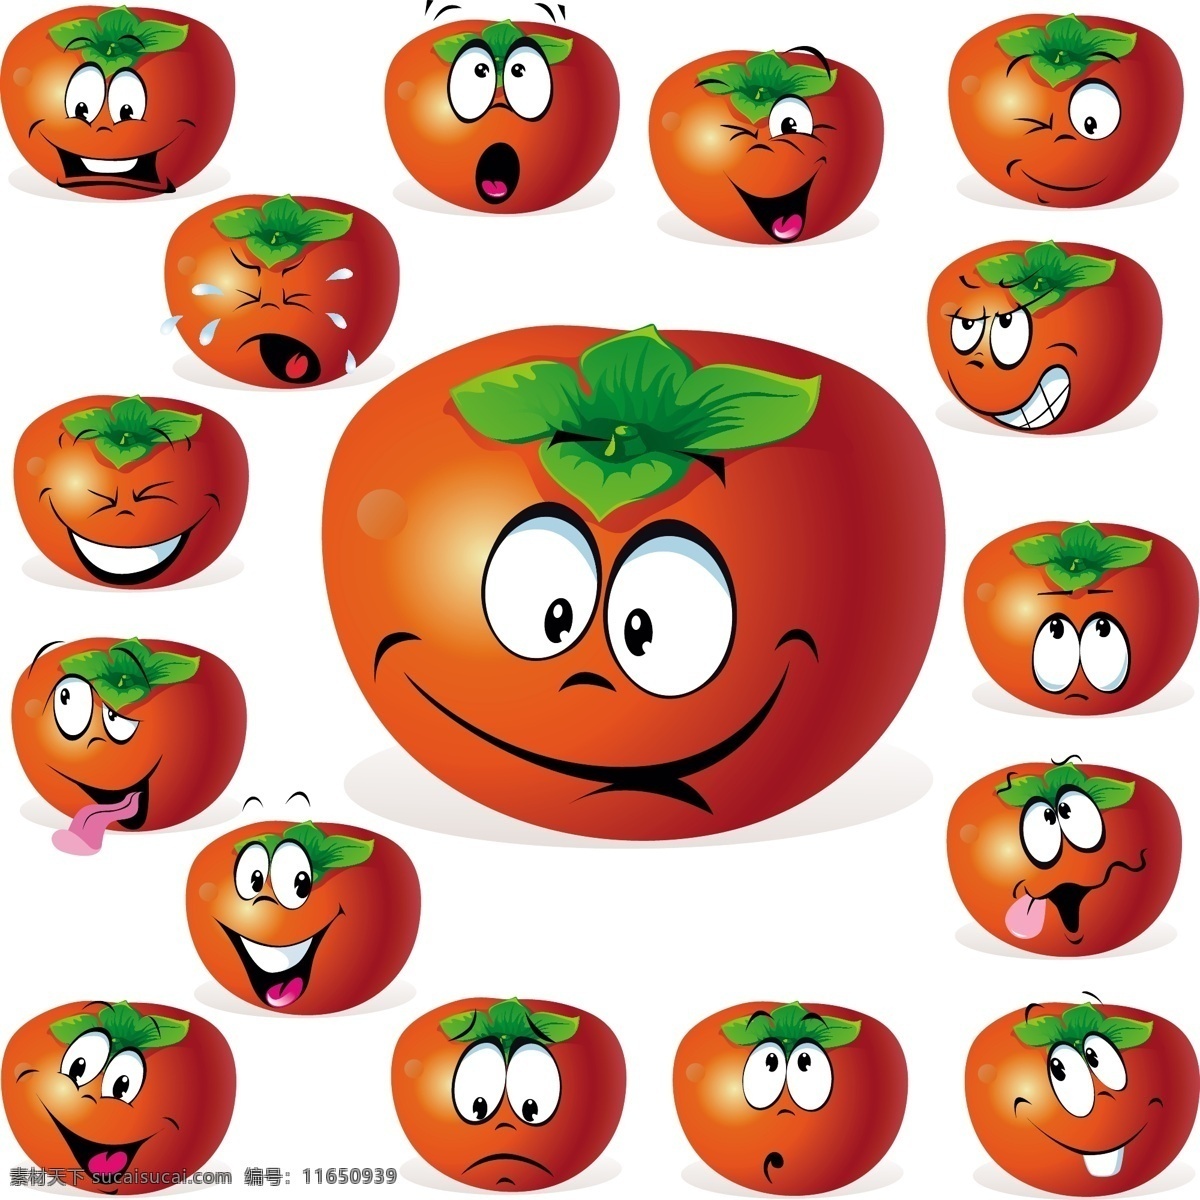 卡通水果表情 水果 表情 笑脸 西红柿 卡通 有趣 可爱 滑稽 幽默 手绘 矢量 蔬菜水果 卡通设计 生物世界